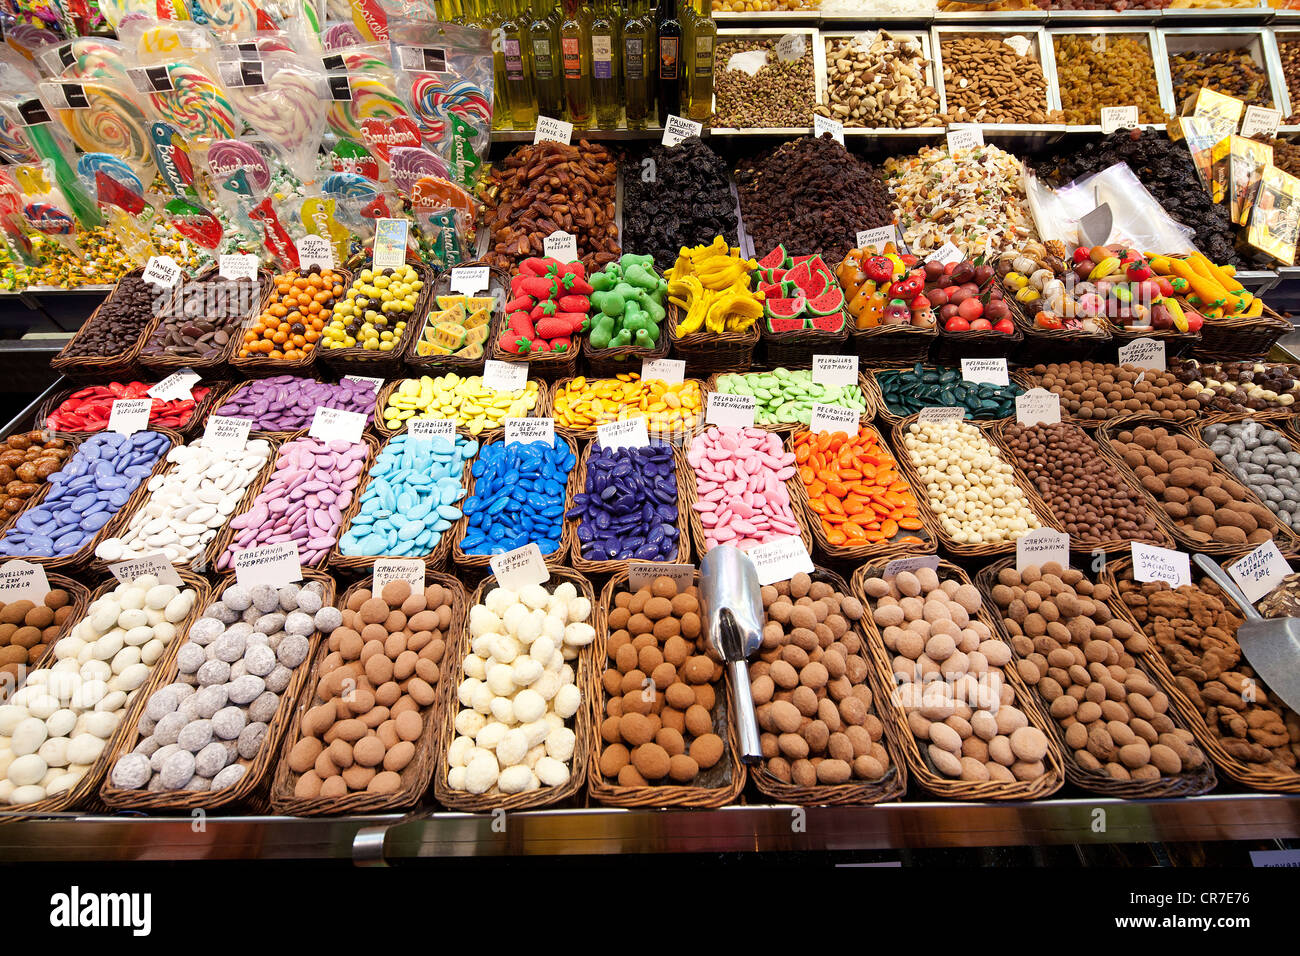 Sweets, chocolate, confectionery, La Boqueria, market stall, Ramblas, Rambles, pedestrian area, Barcelona, Catalonia, Spain Stock Photo